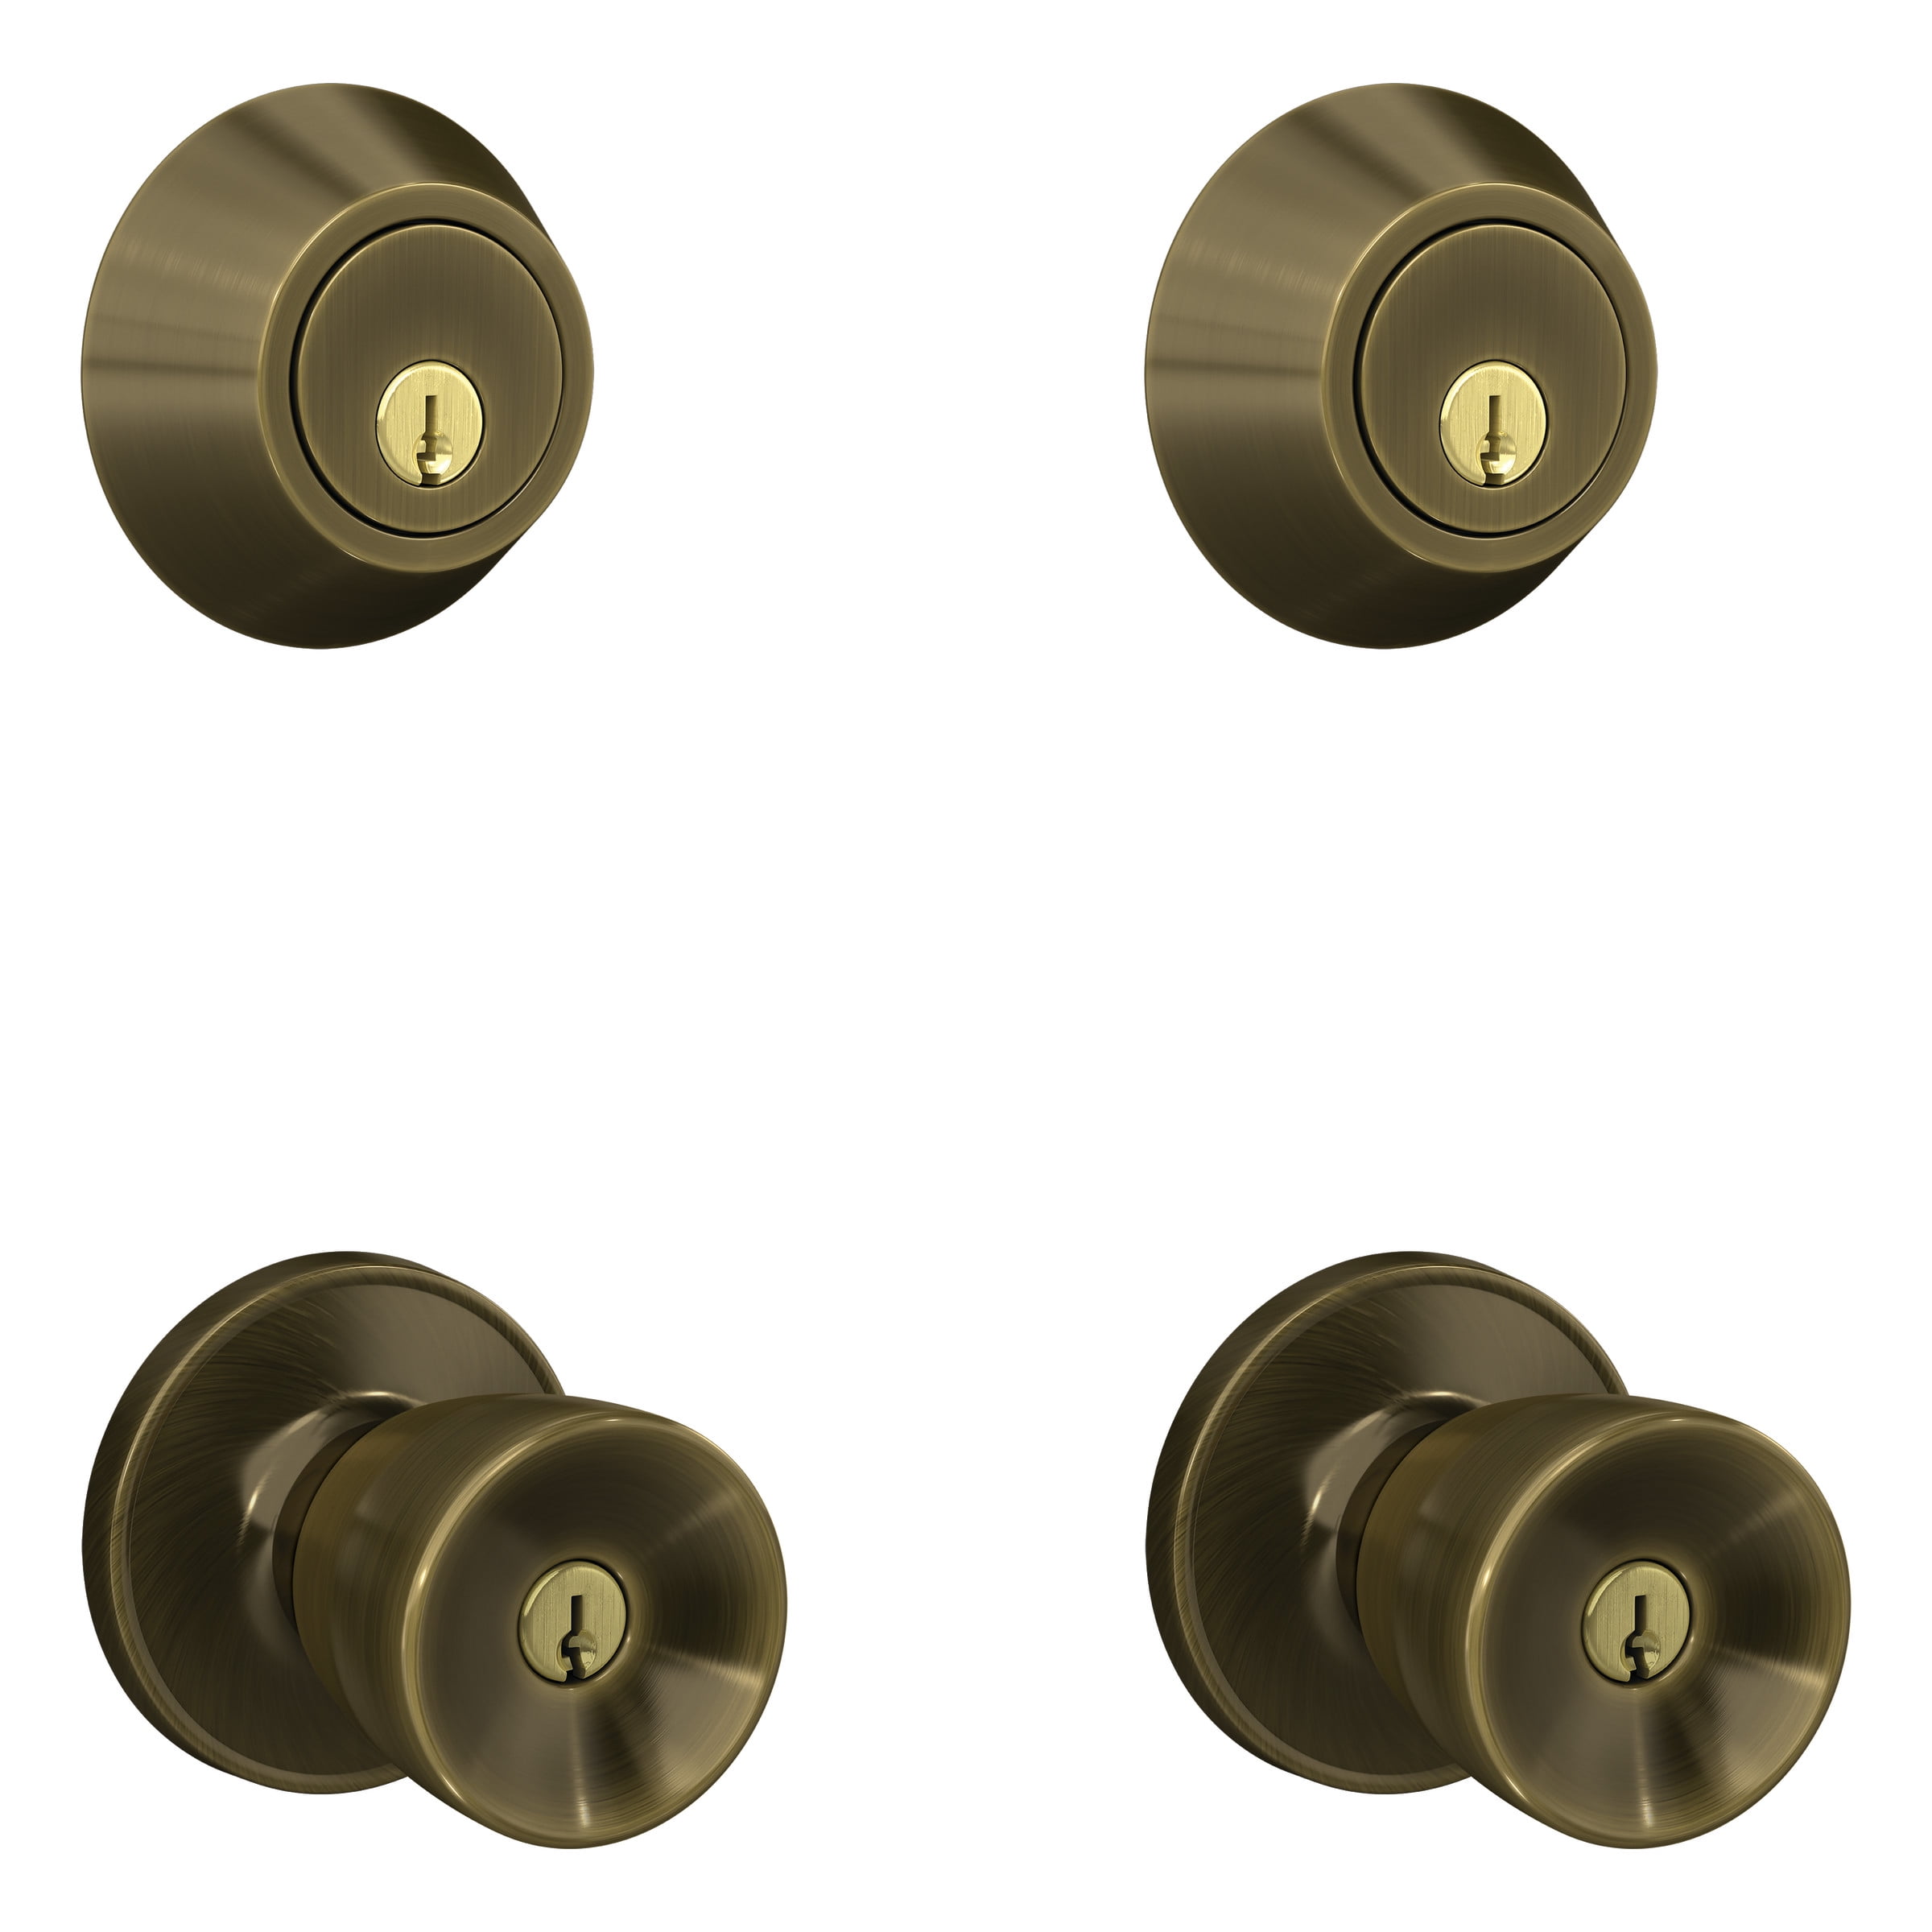 Scladge Security set door locks w/ deadbolt 